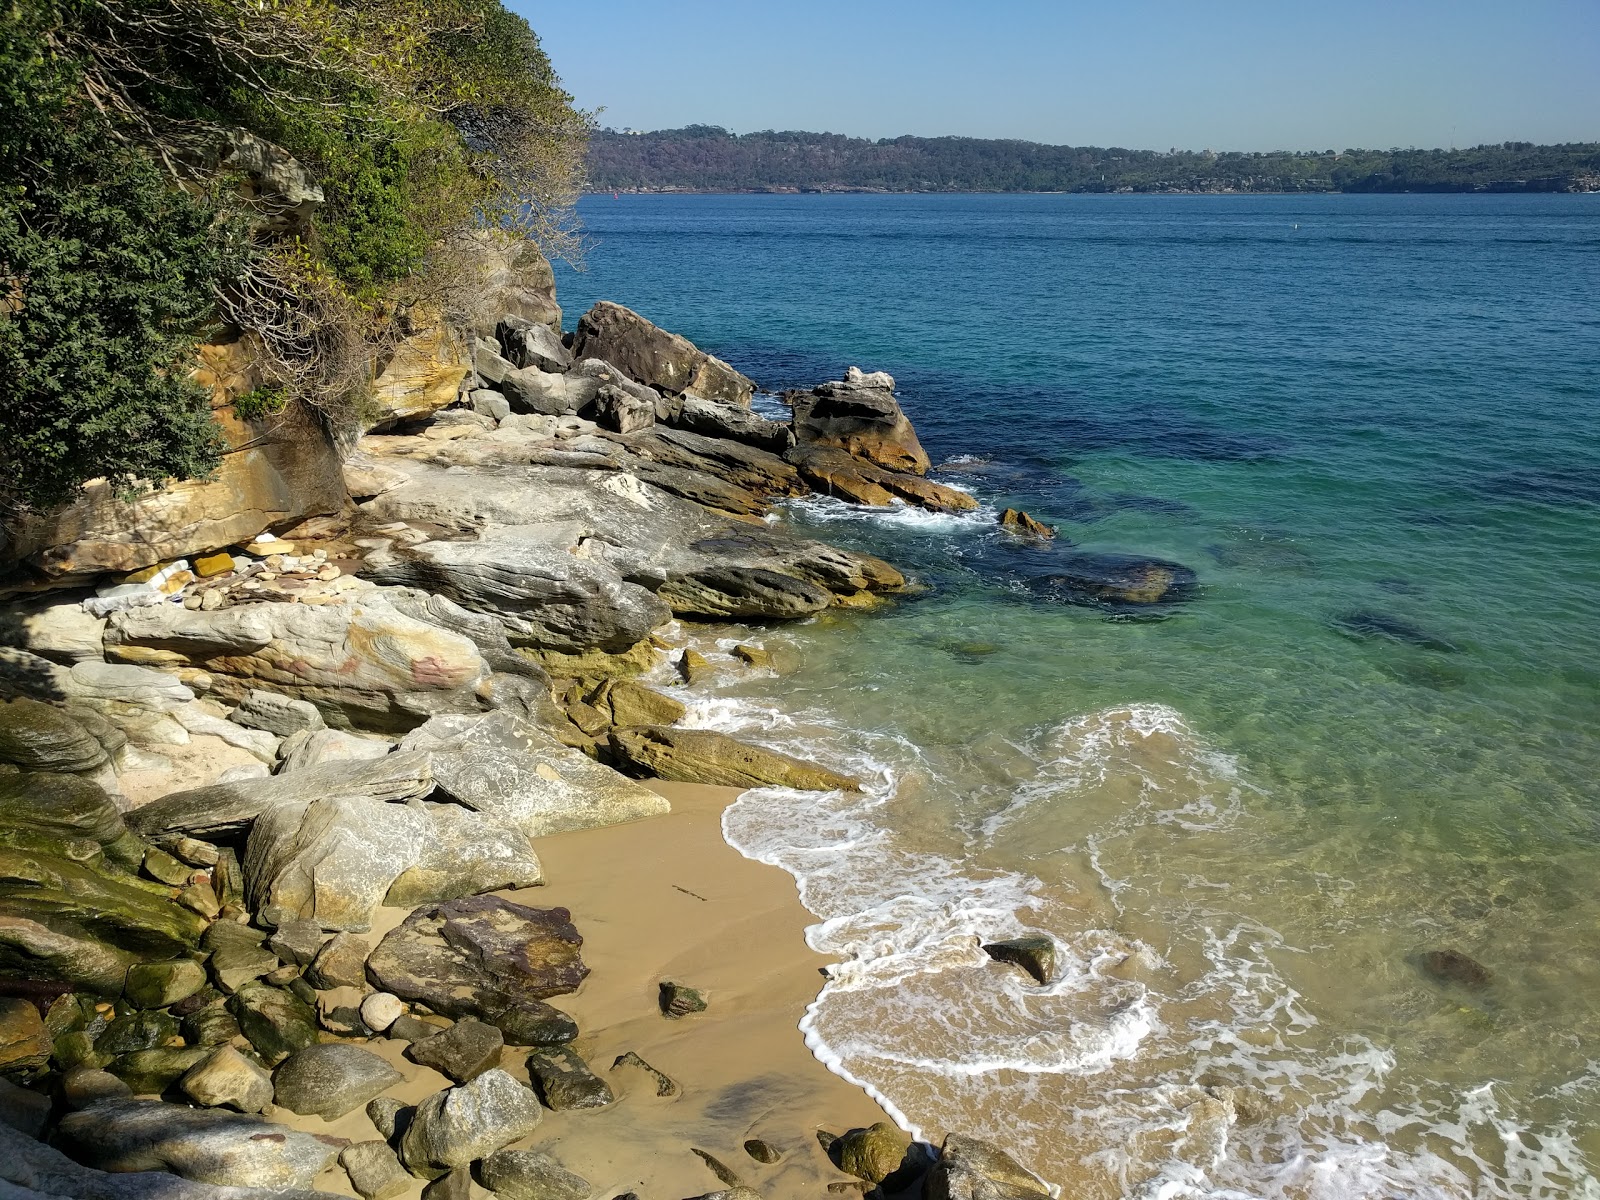 Fotografija Lady Bay Beach nahaja se v naravnem okolju